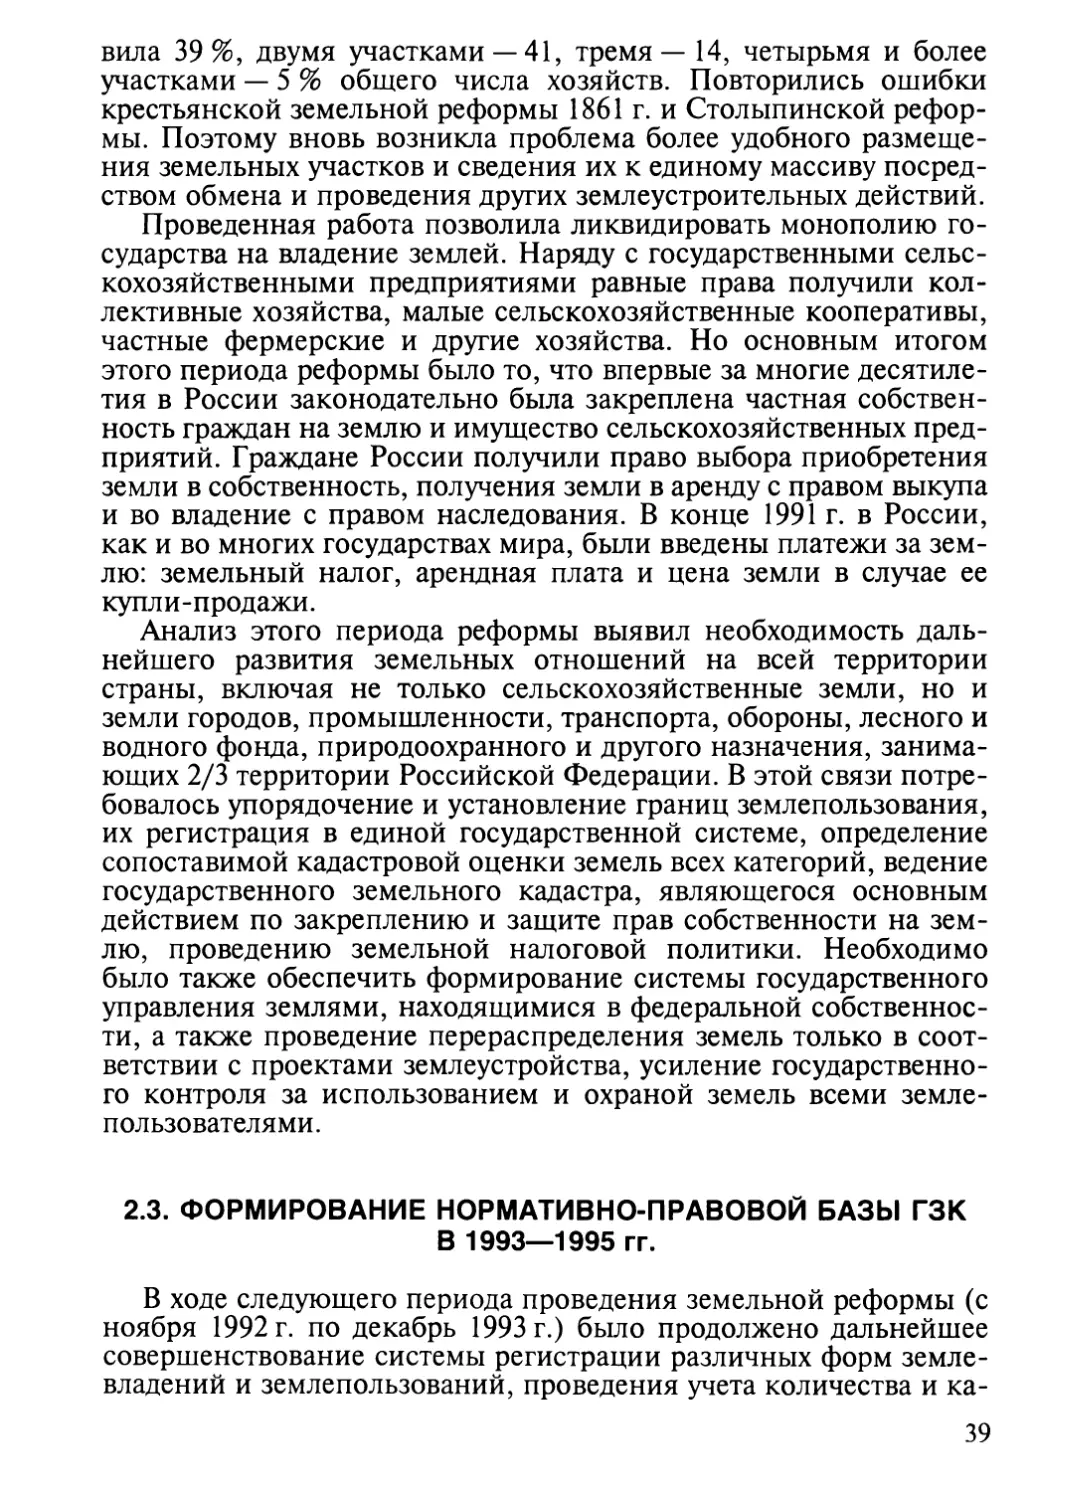 2.3. Формирование нормативно-правовой базы ГЗК в 1993—1995 гг